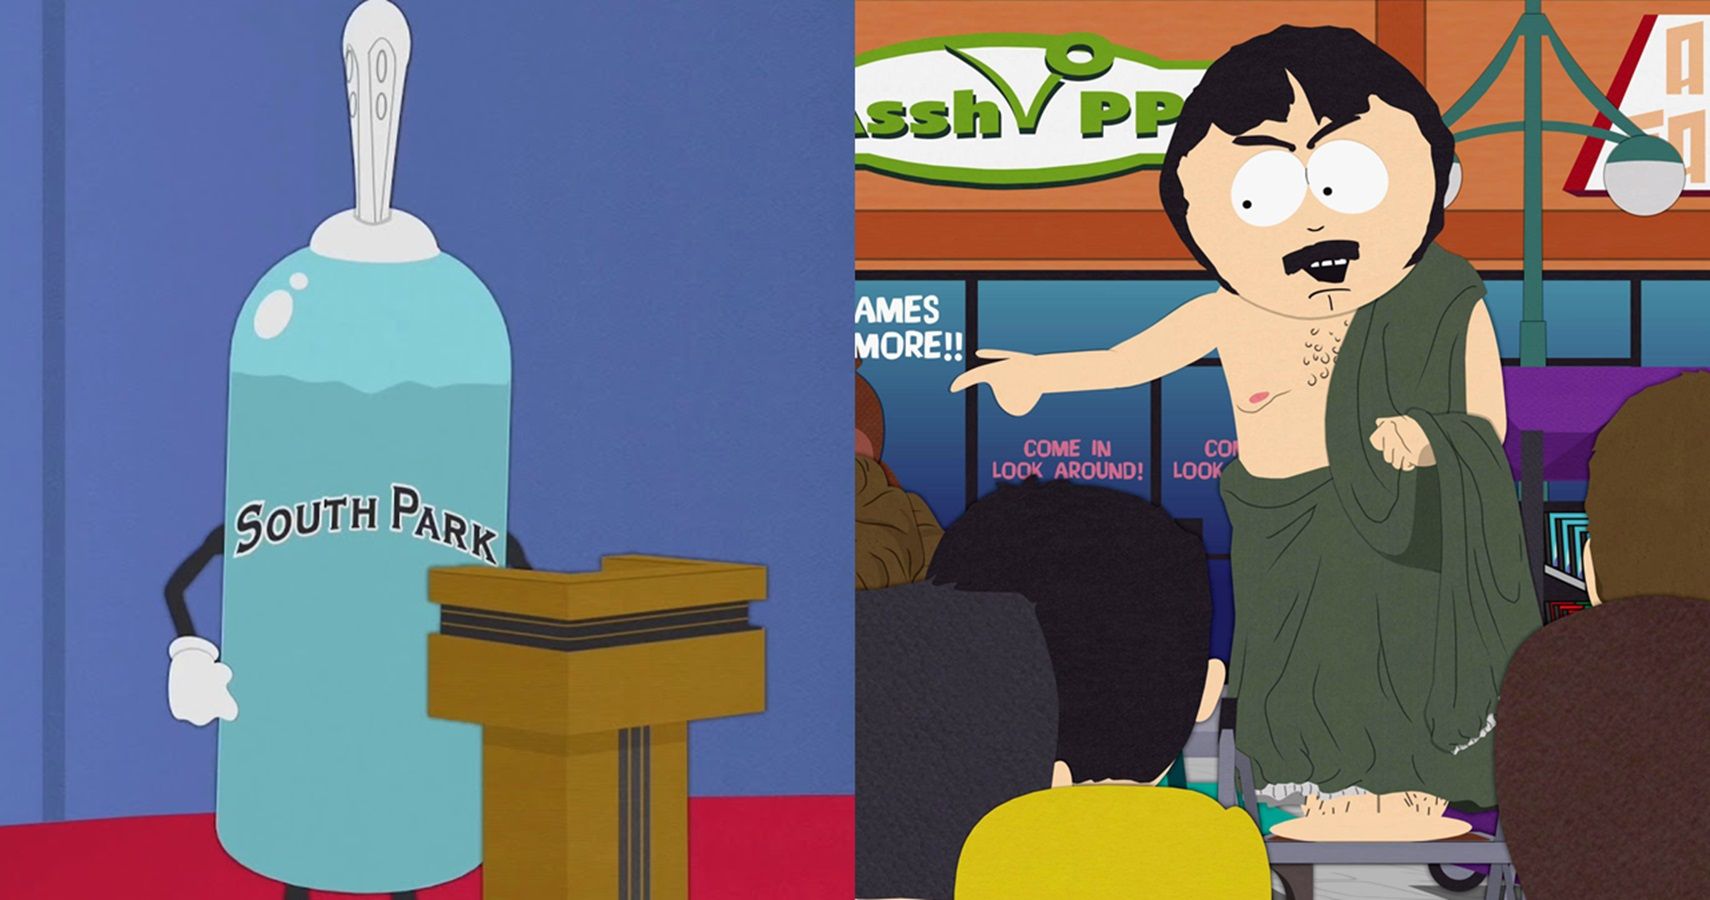 South Park Episodes